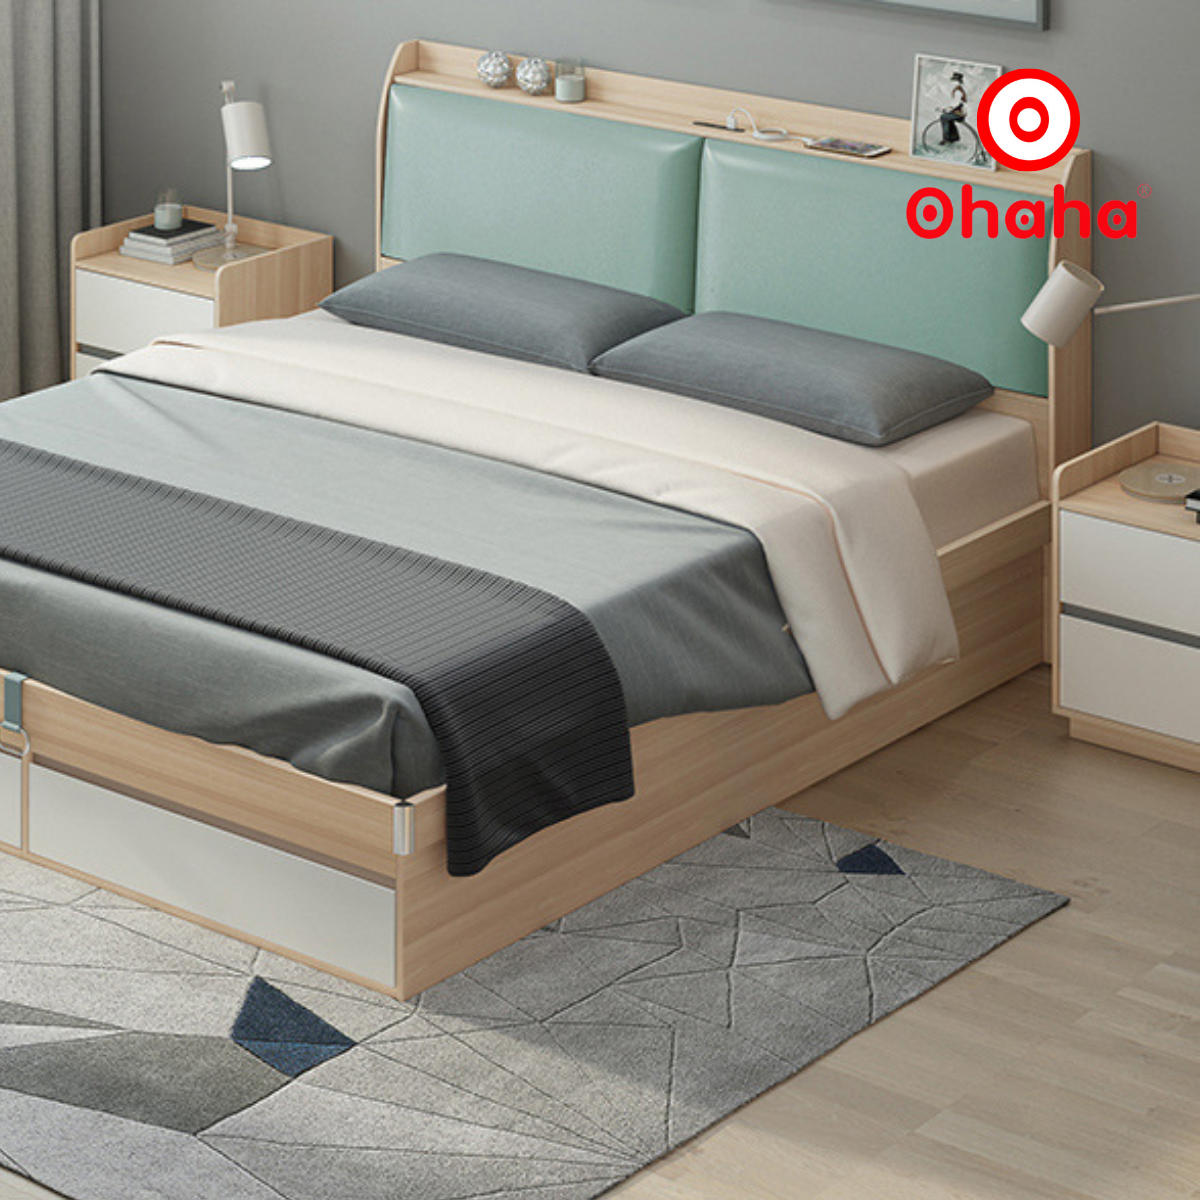 Hình ảnh [Miễn phí vận chuyển & lắp đặt] Giường ngủ thông minh cao cấp bọc nệm đầu giường có hộc kéo gỗ công nghiệp Ohaha - GN016